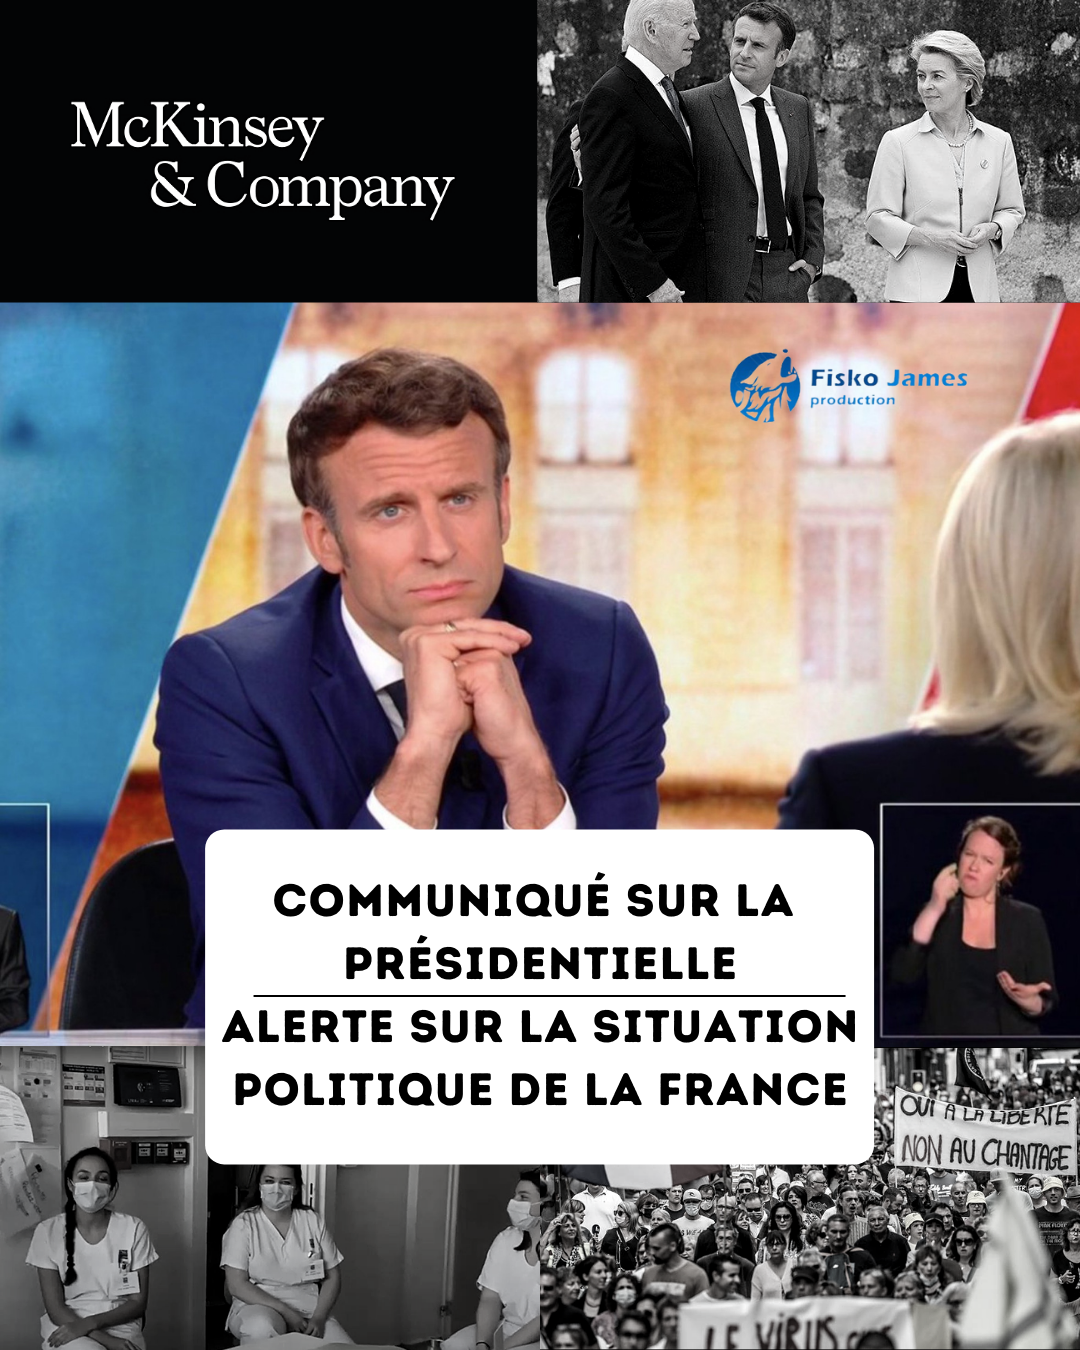 Communiqué sur la présidentielle - alerte sur la situation politique de la France